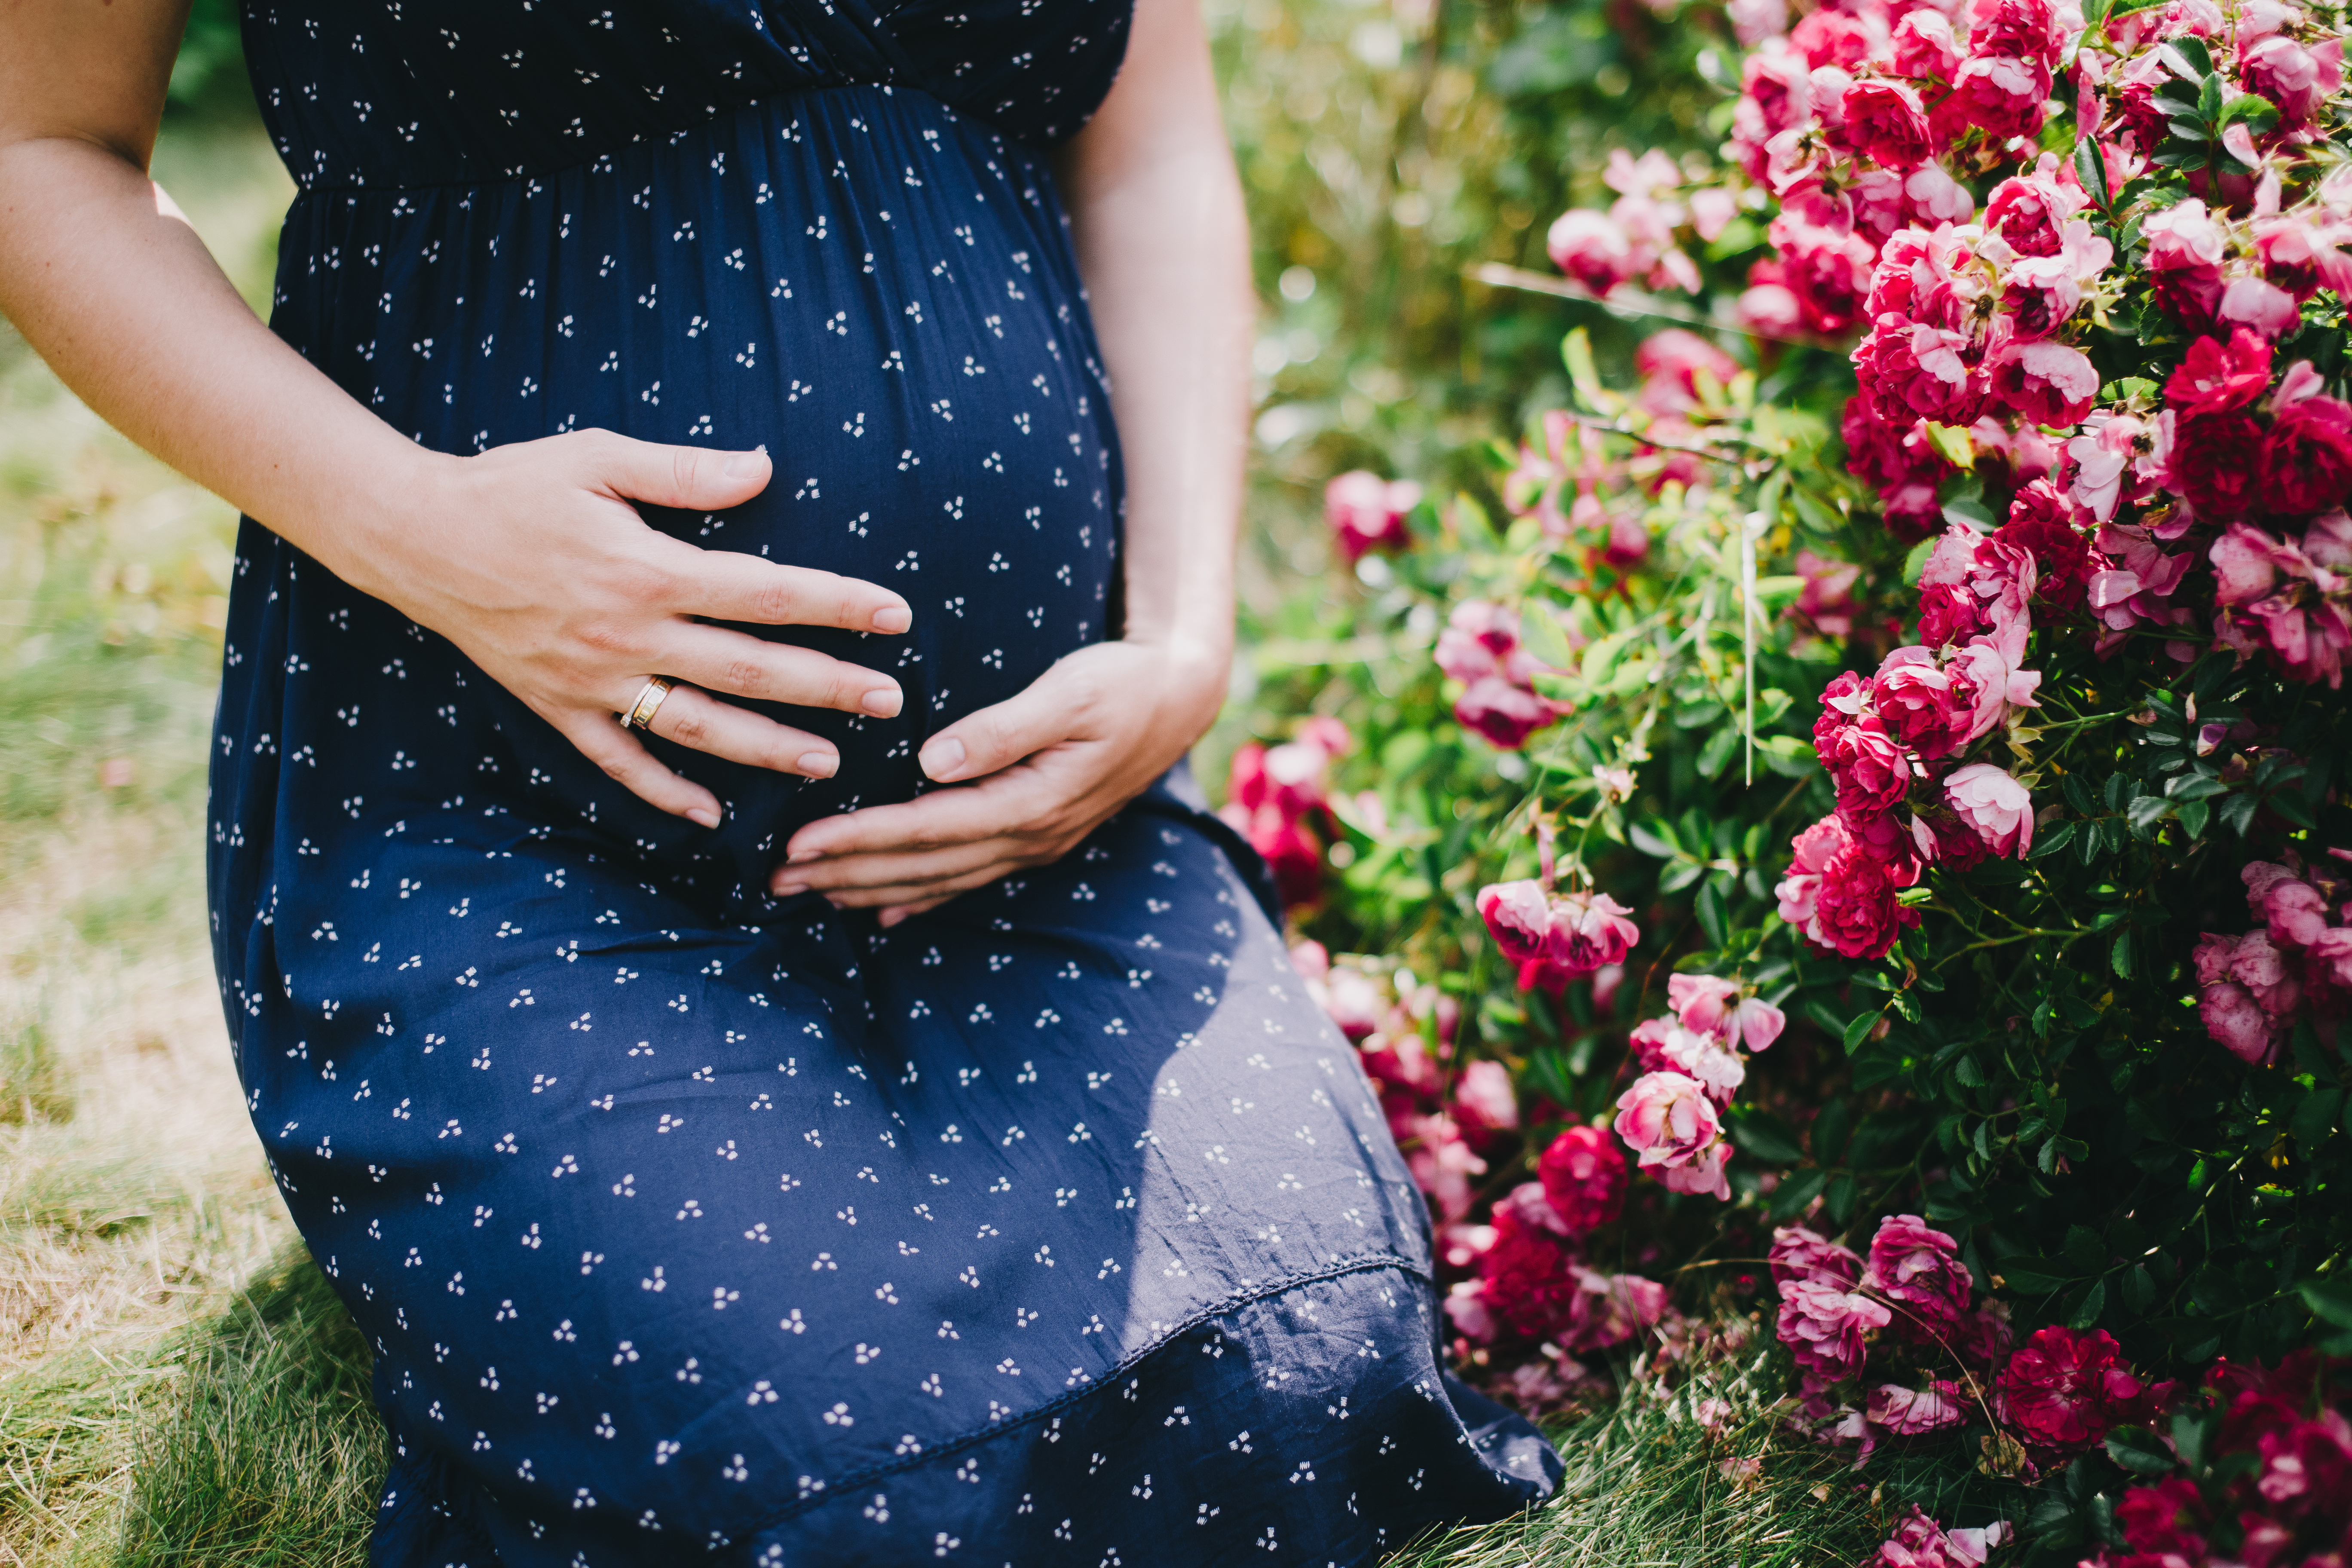 Vientre de embarazada | Fuente: Shutterstock